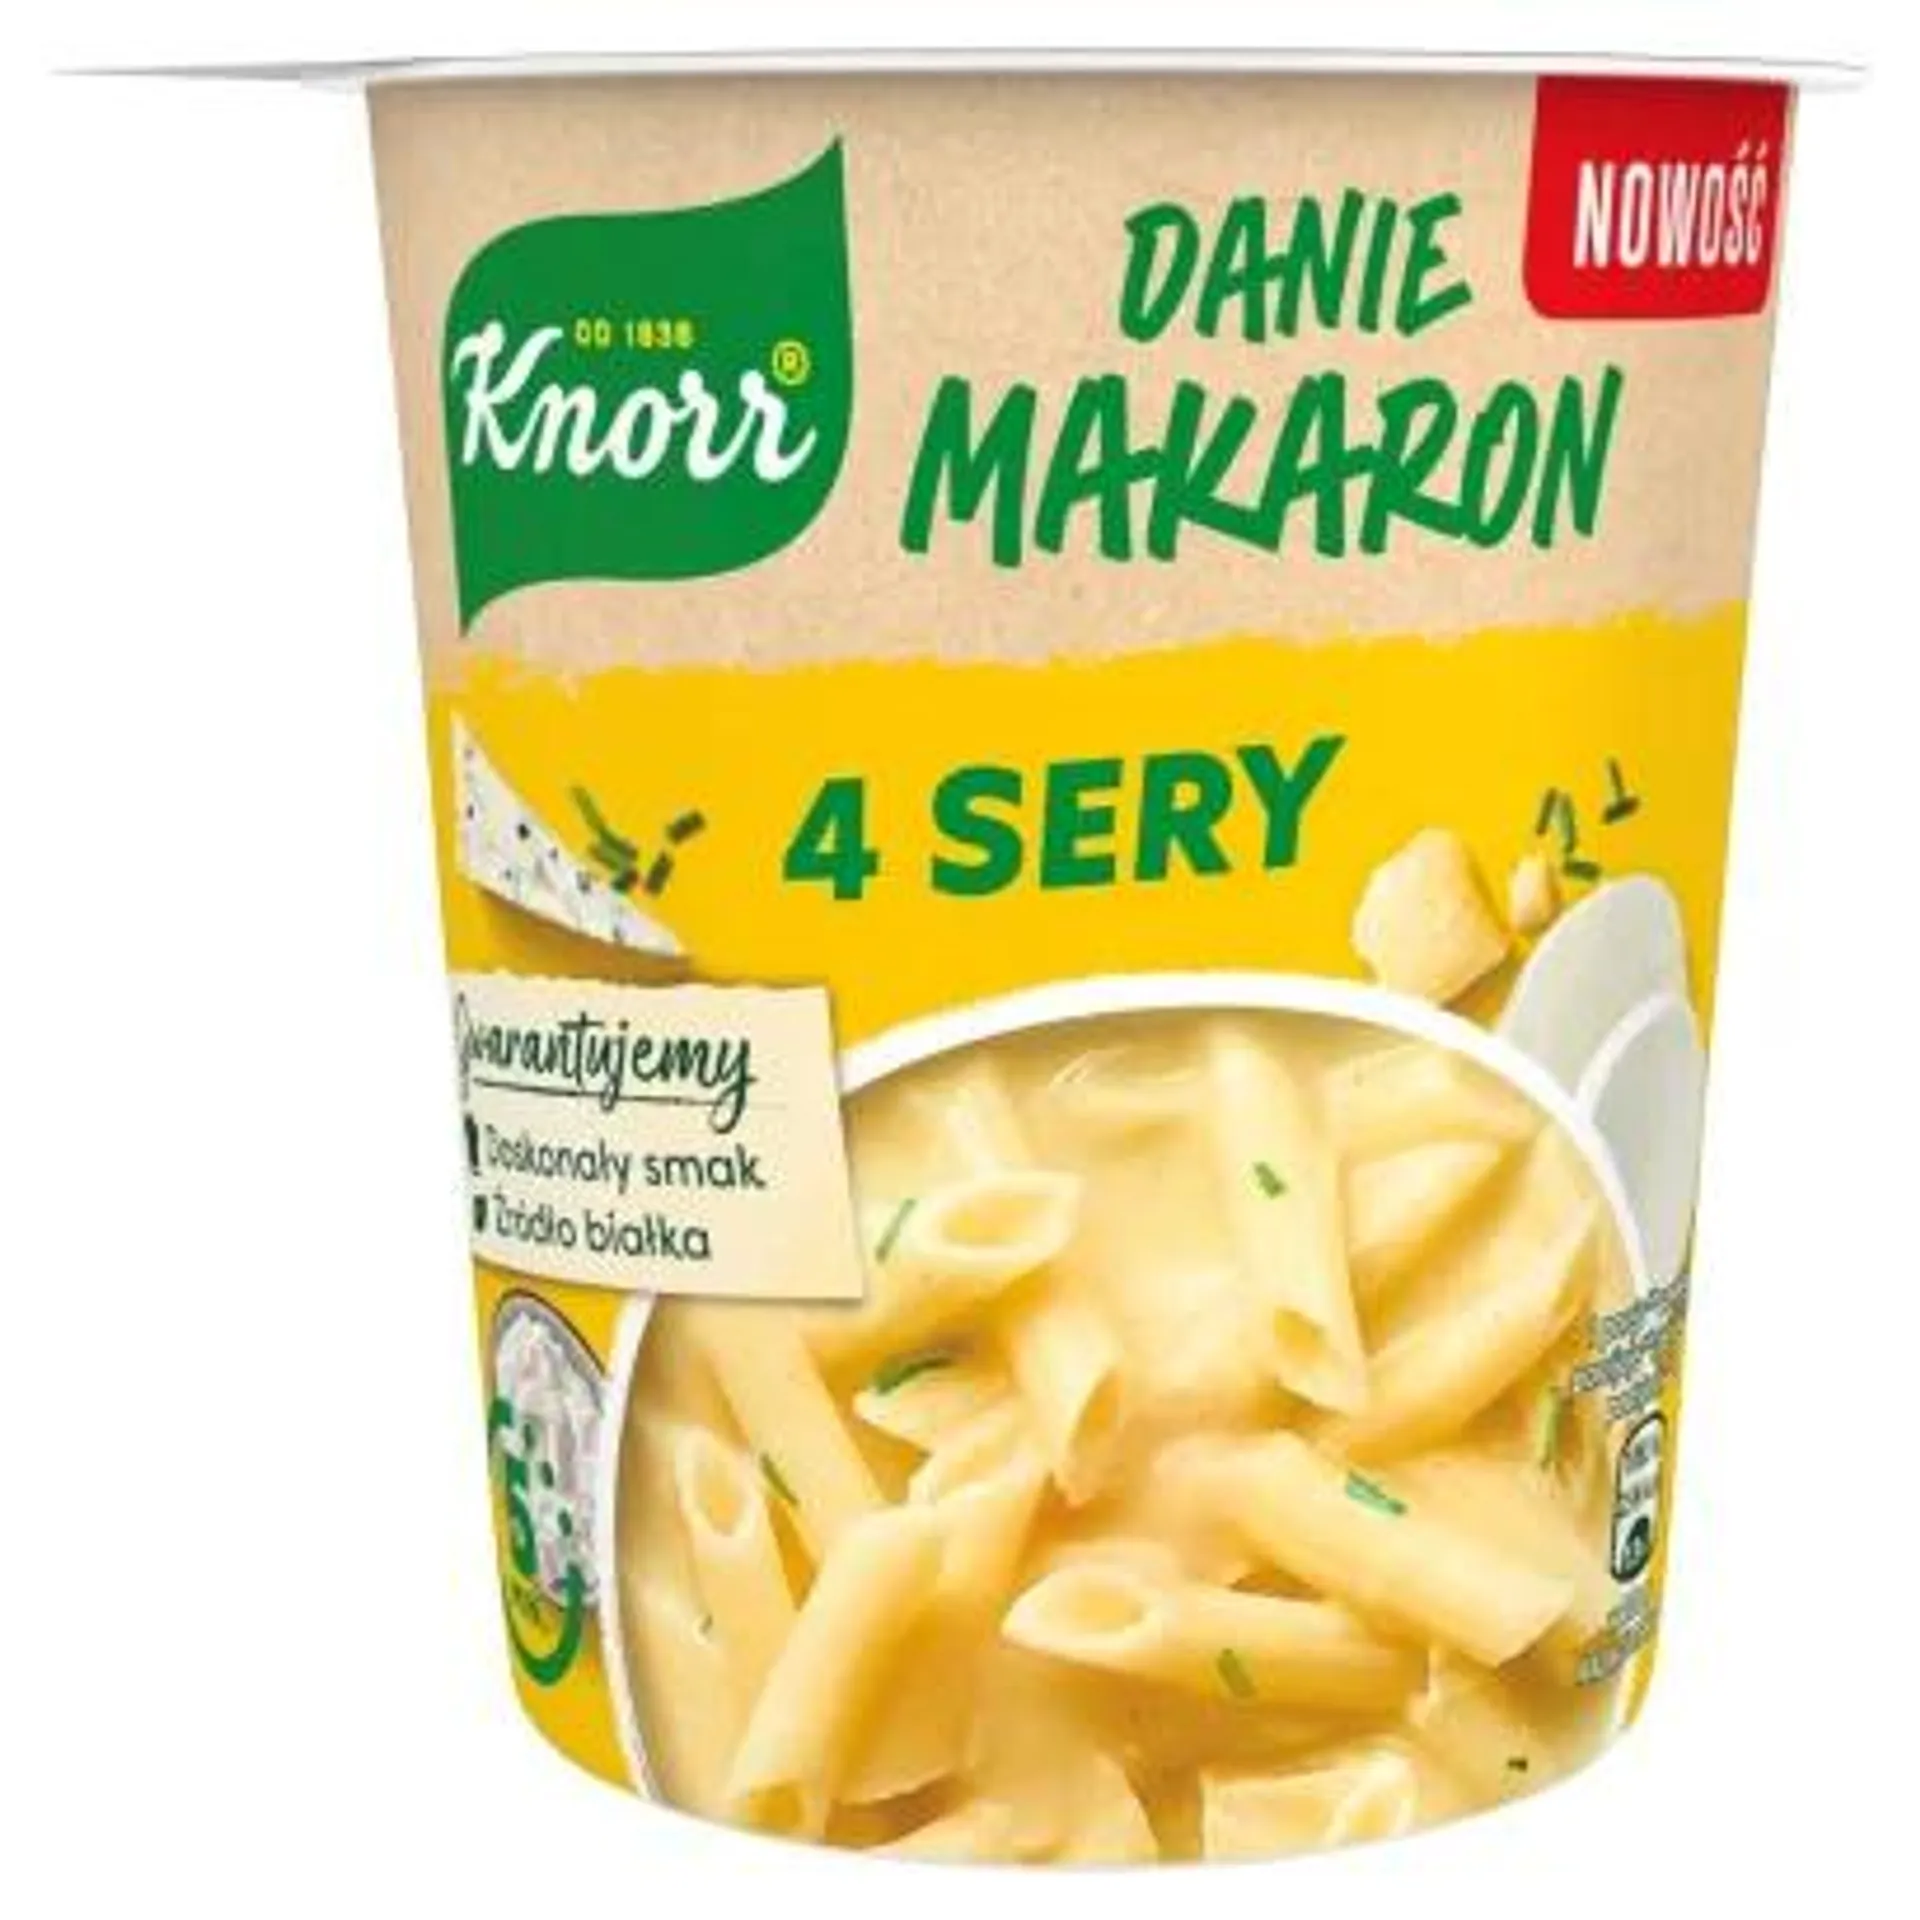 Knorr - Danie makaron z sosem 4 sery